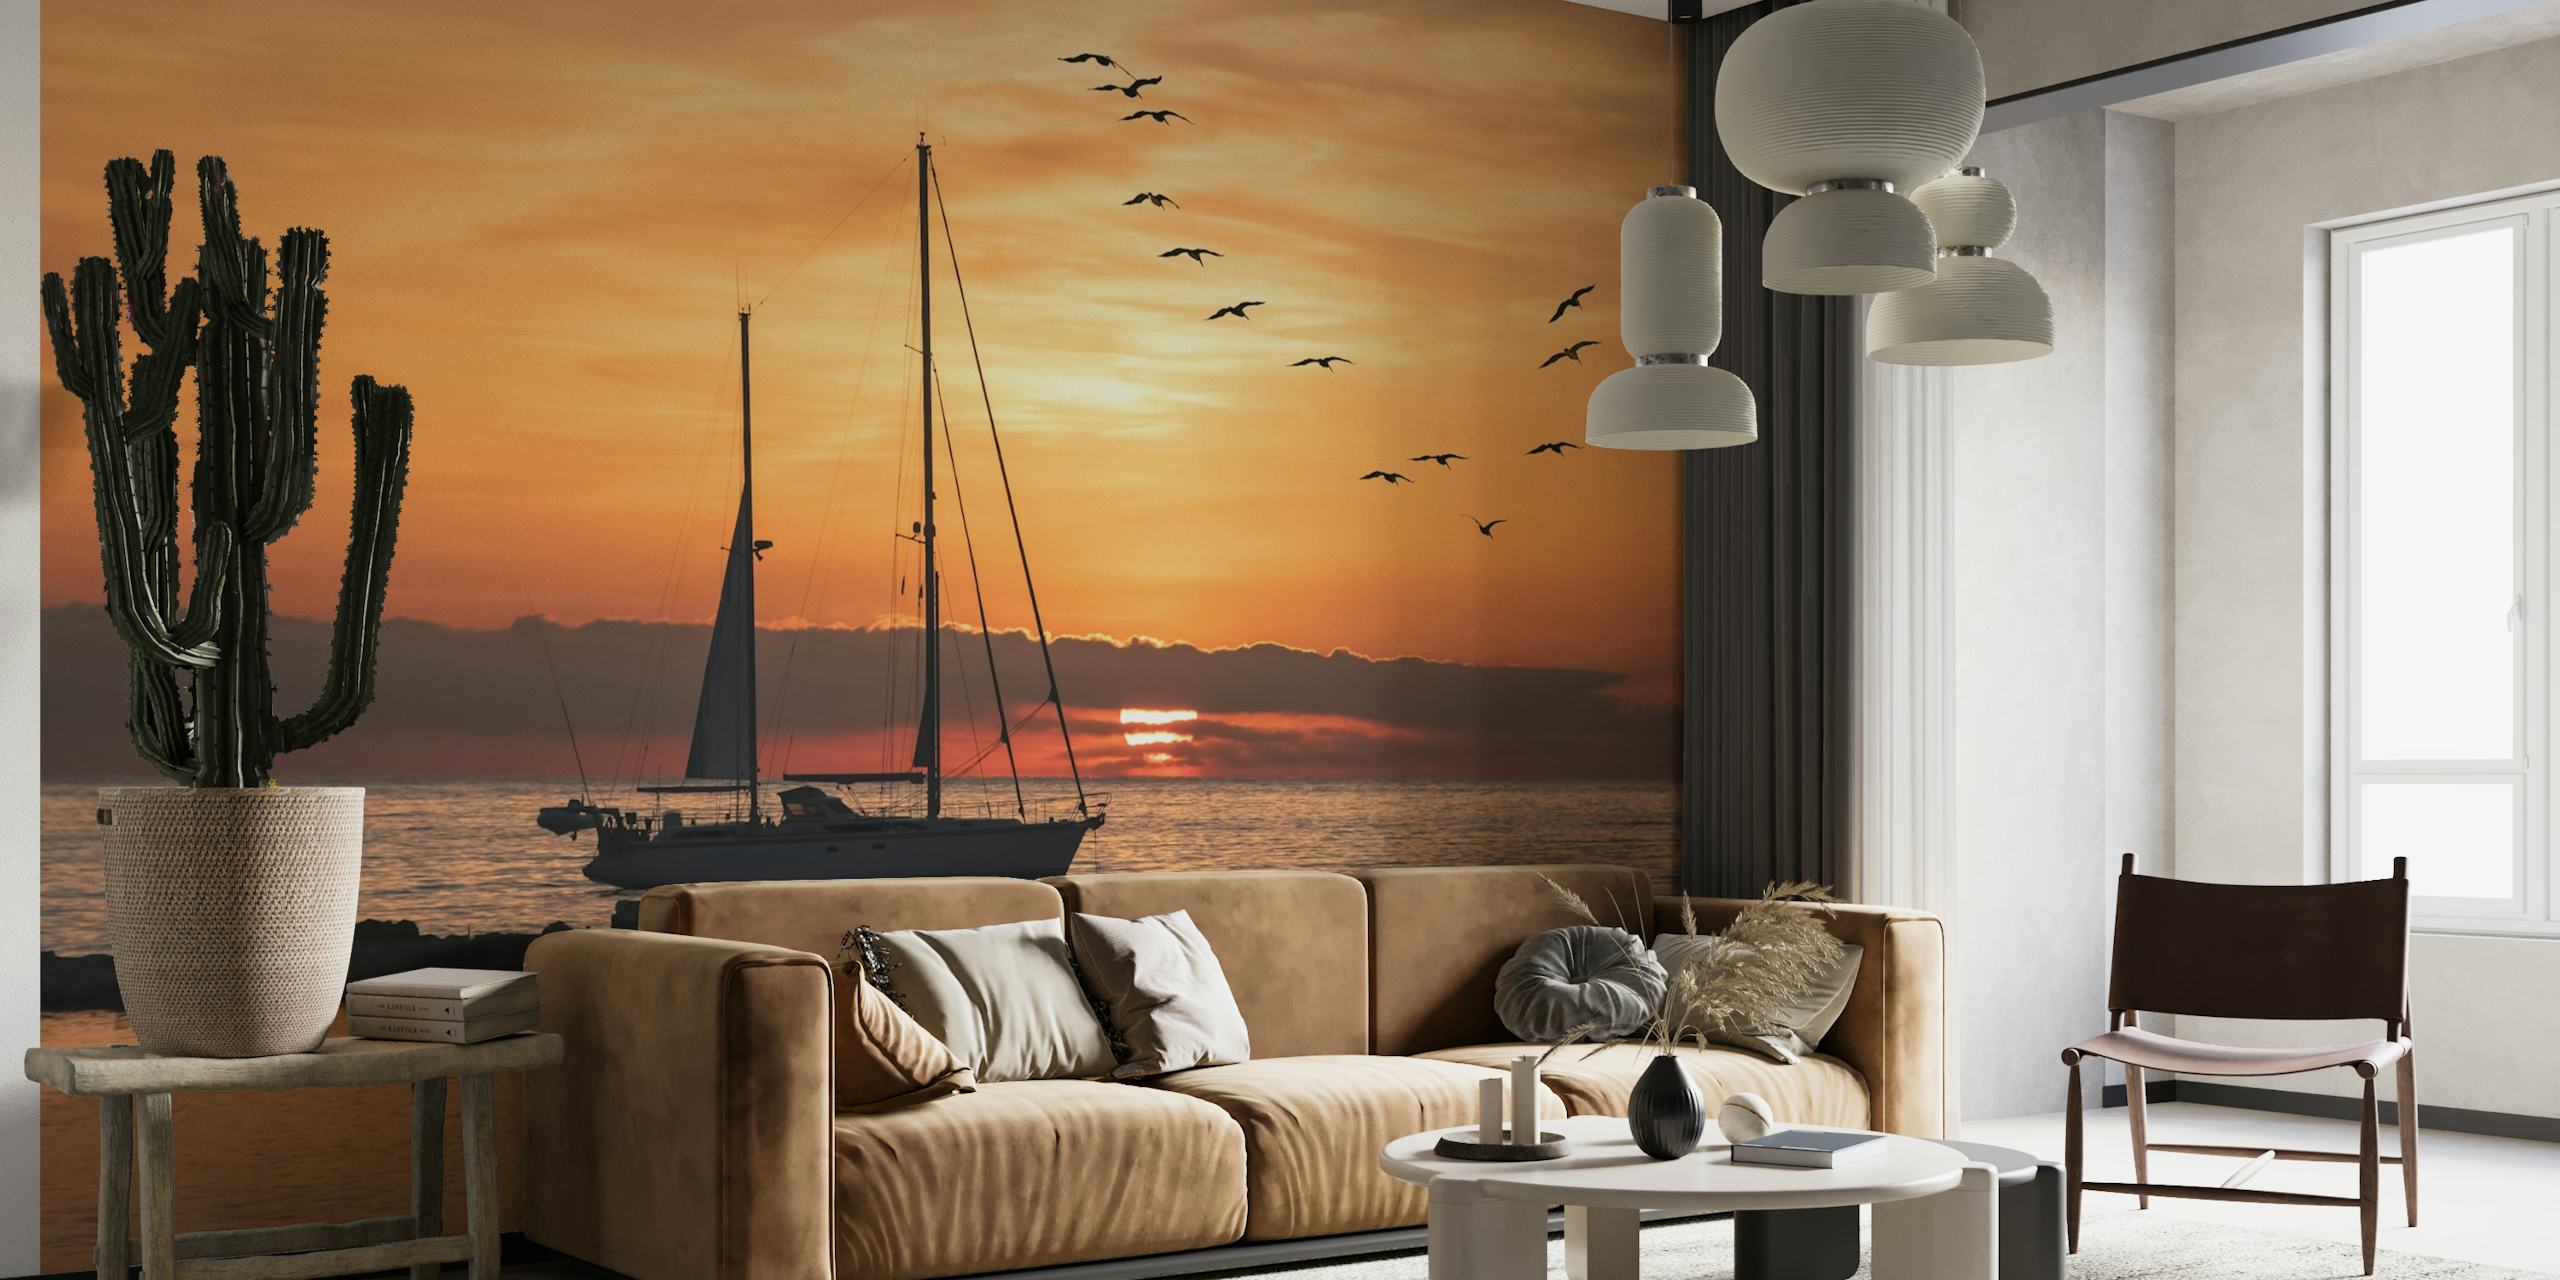 Fotomural silueta de velero sobre un fondo de puesta de sol con pájaros volando sobre el mar